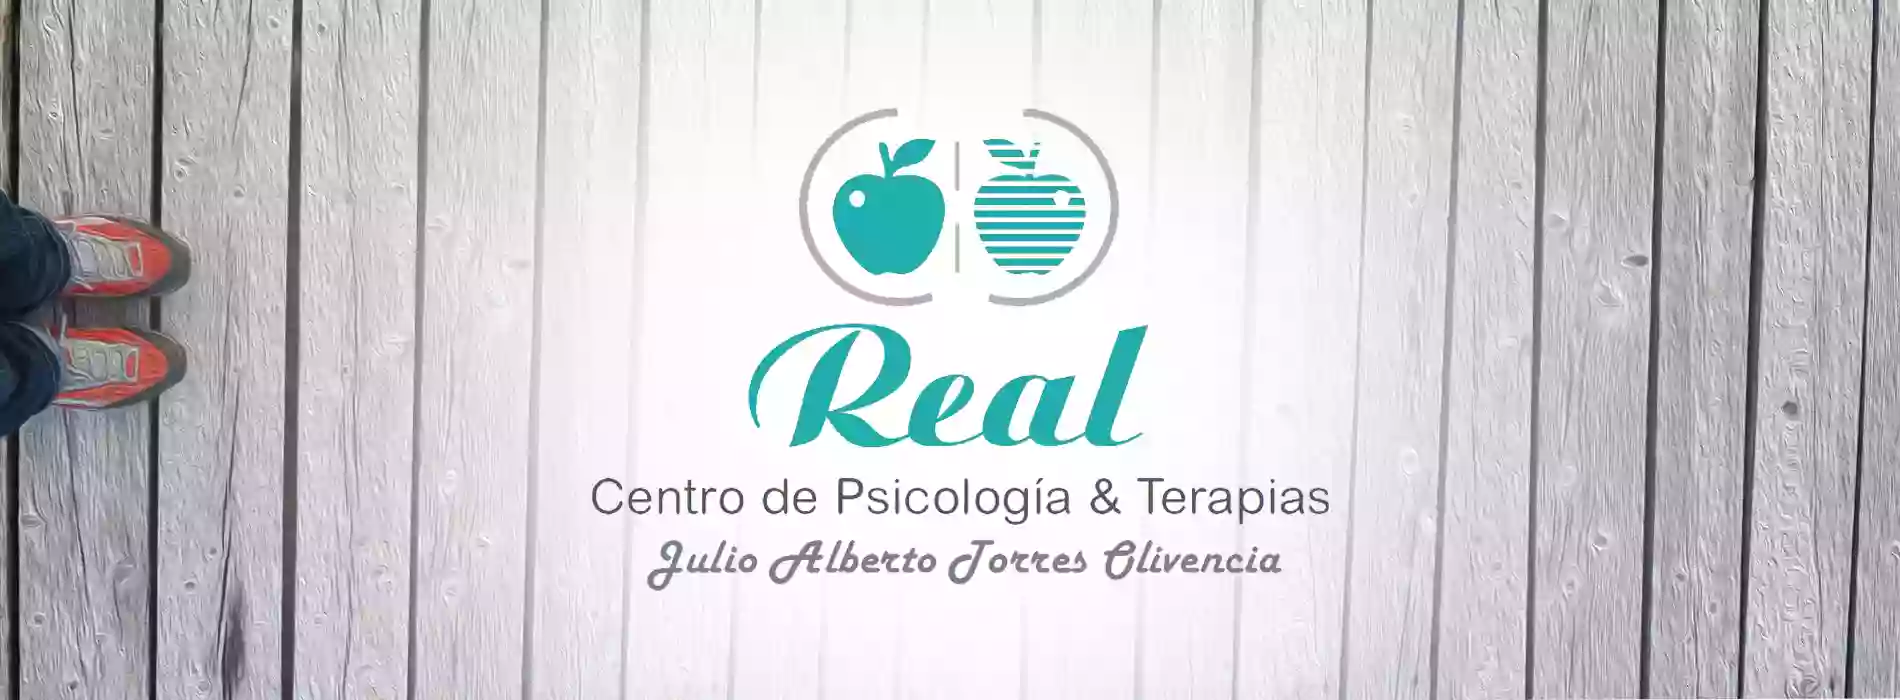 REAL Centro de Psicología & Terapias JULIO ALBERTO TORRES OLIVENCIA